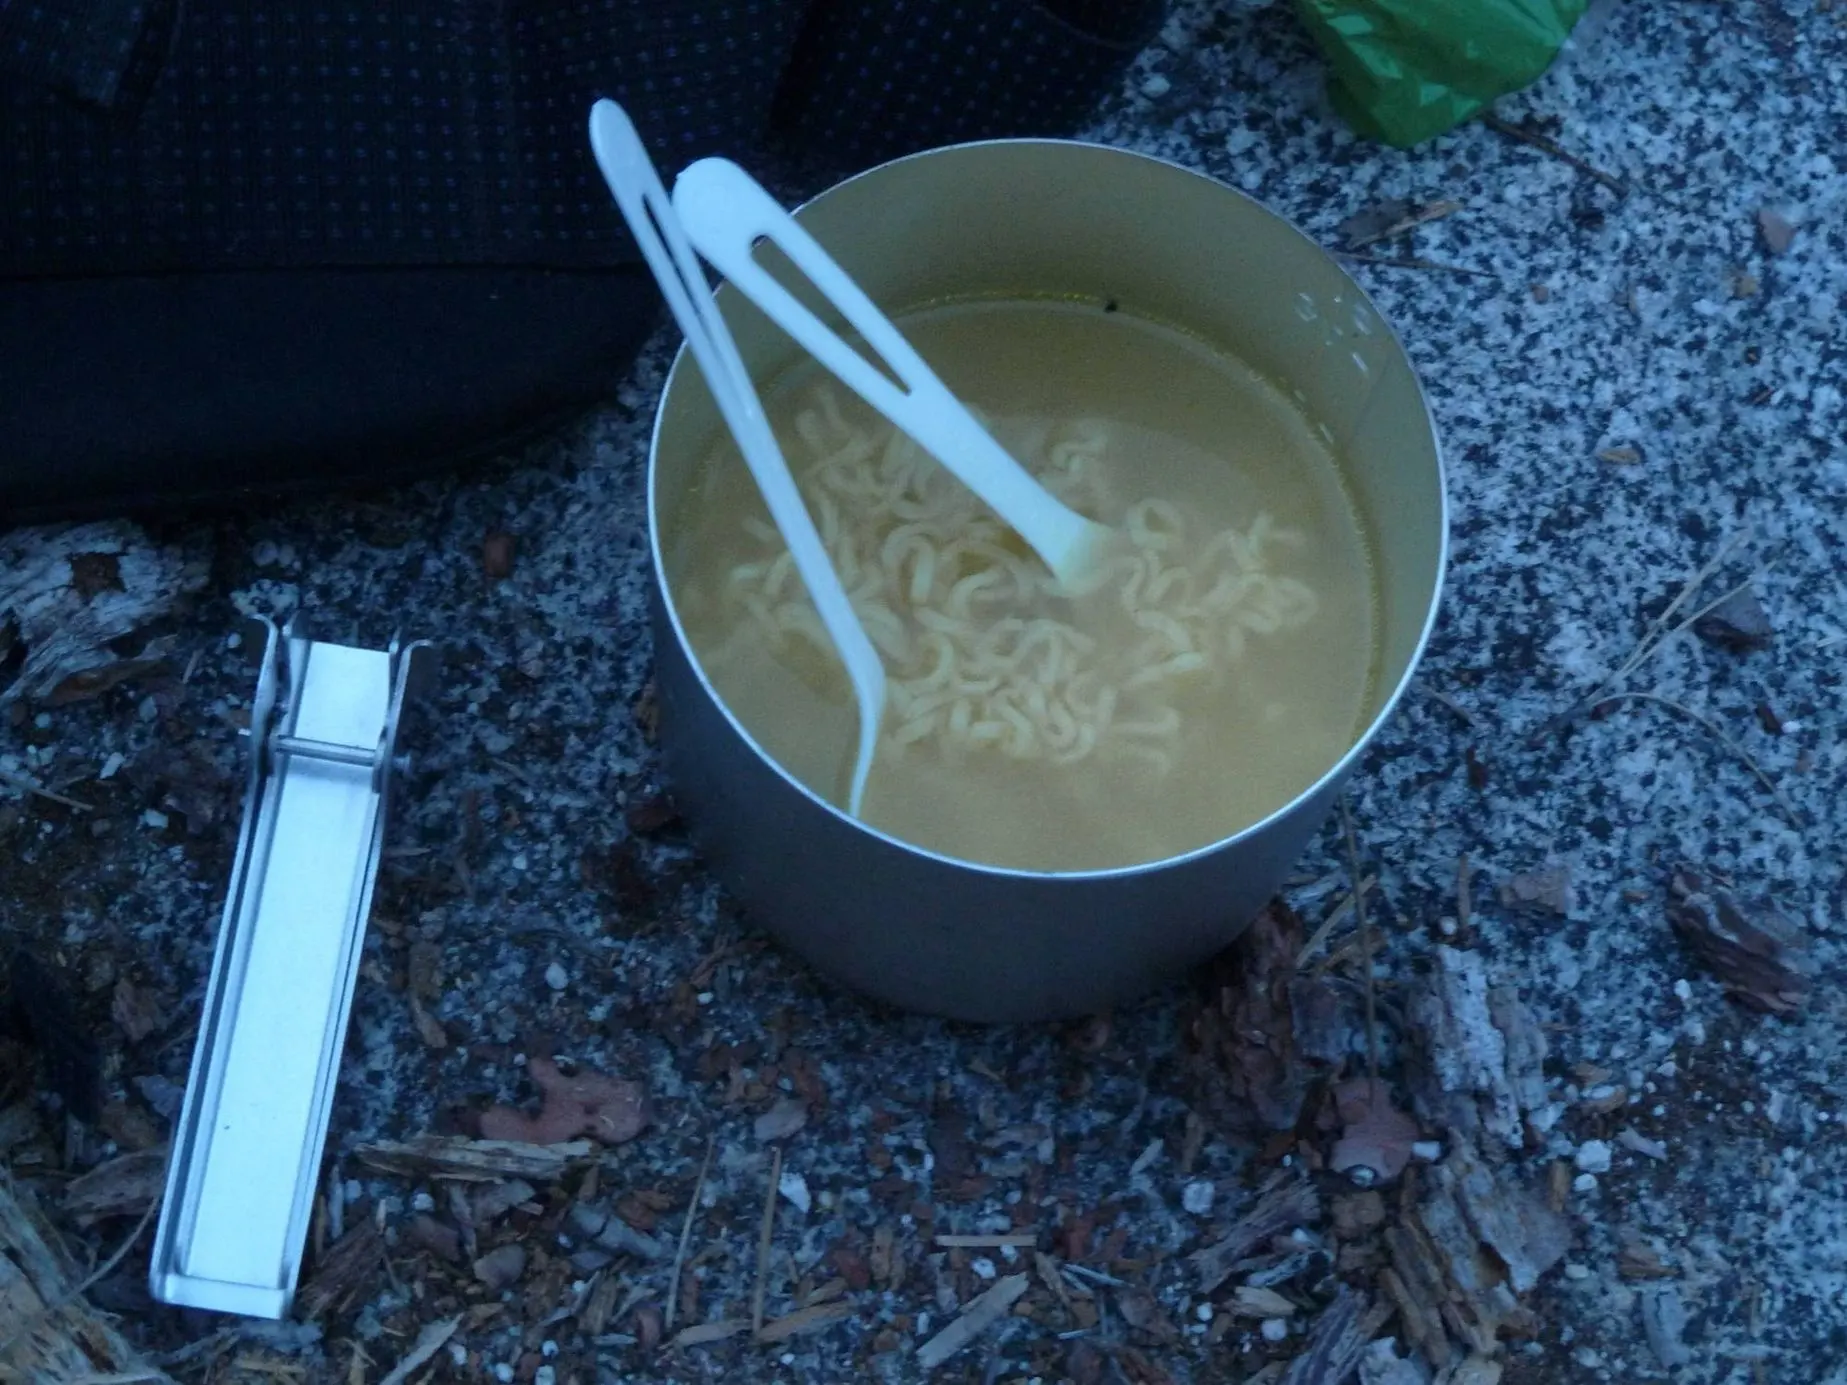 Pot noodles